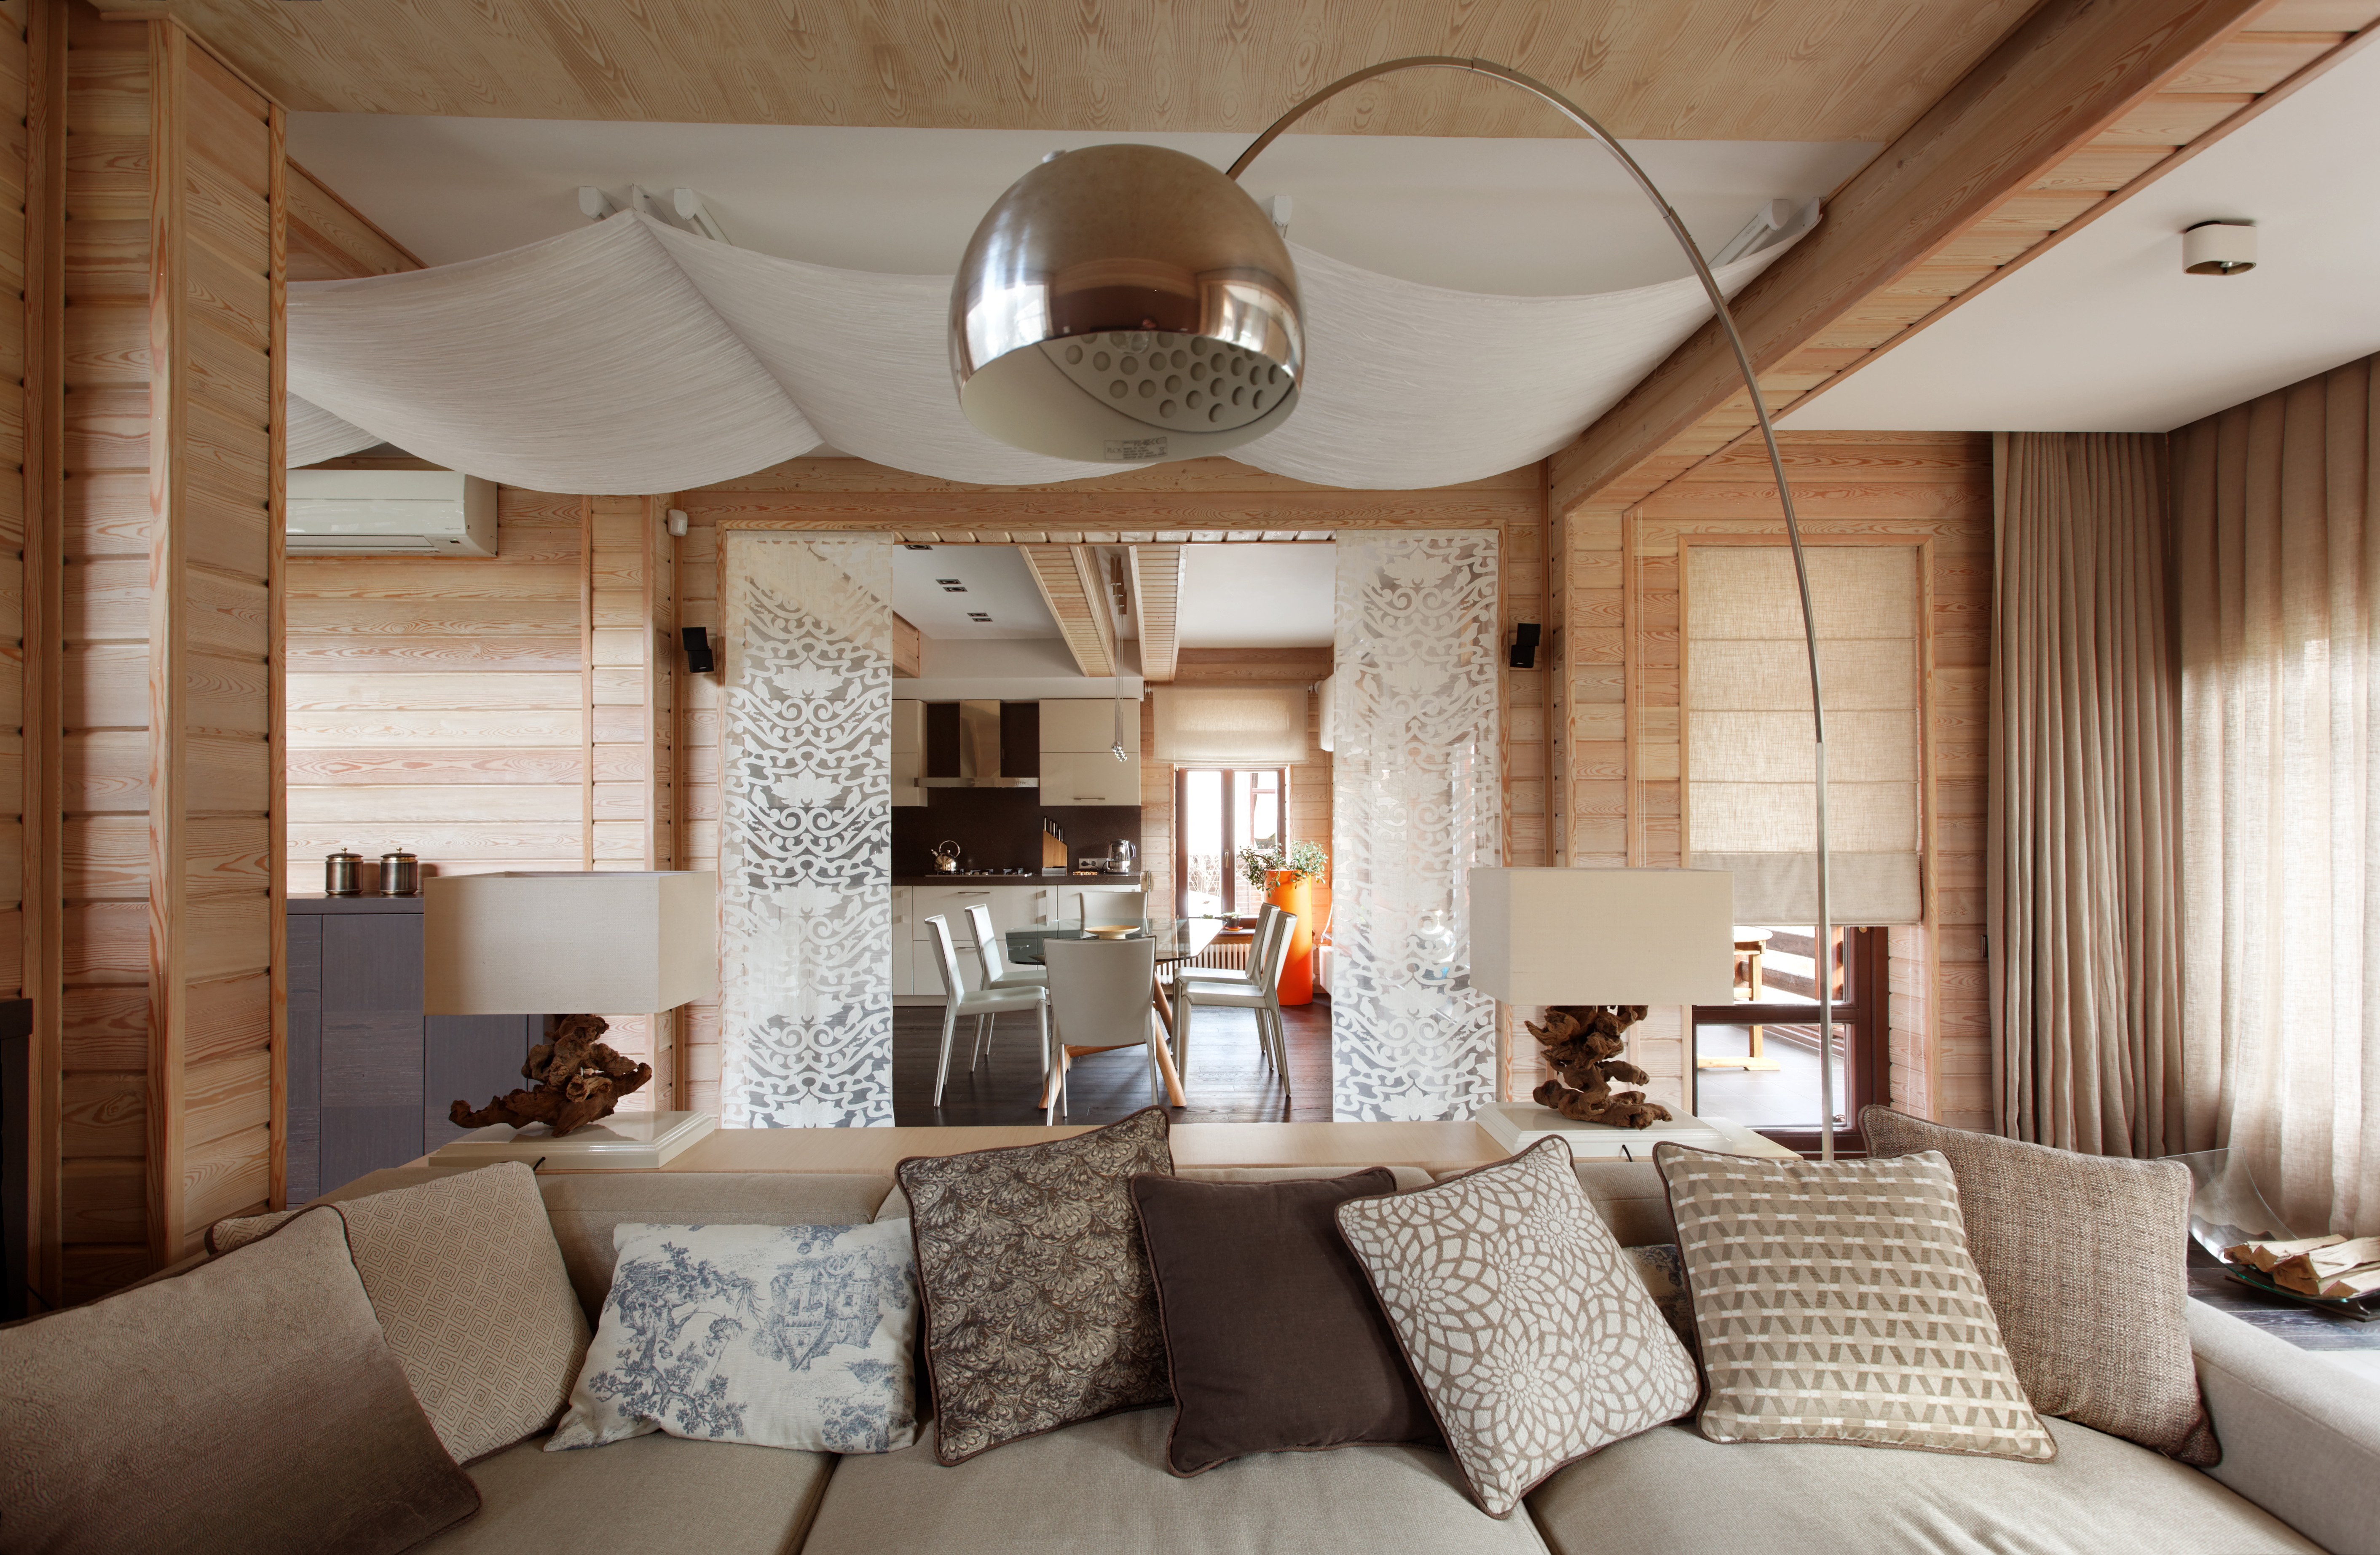 Интерьер гостинной в деревянном доме » Современный дизайн на Vip-1gl